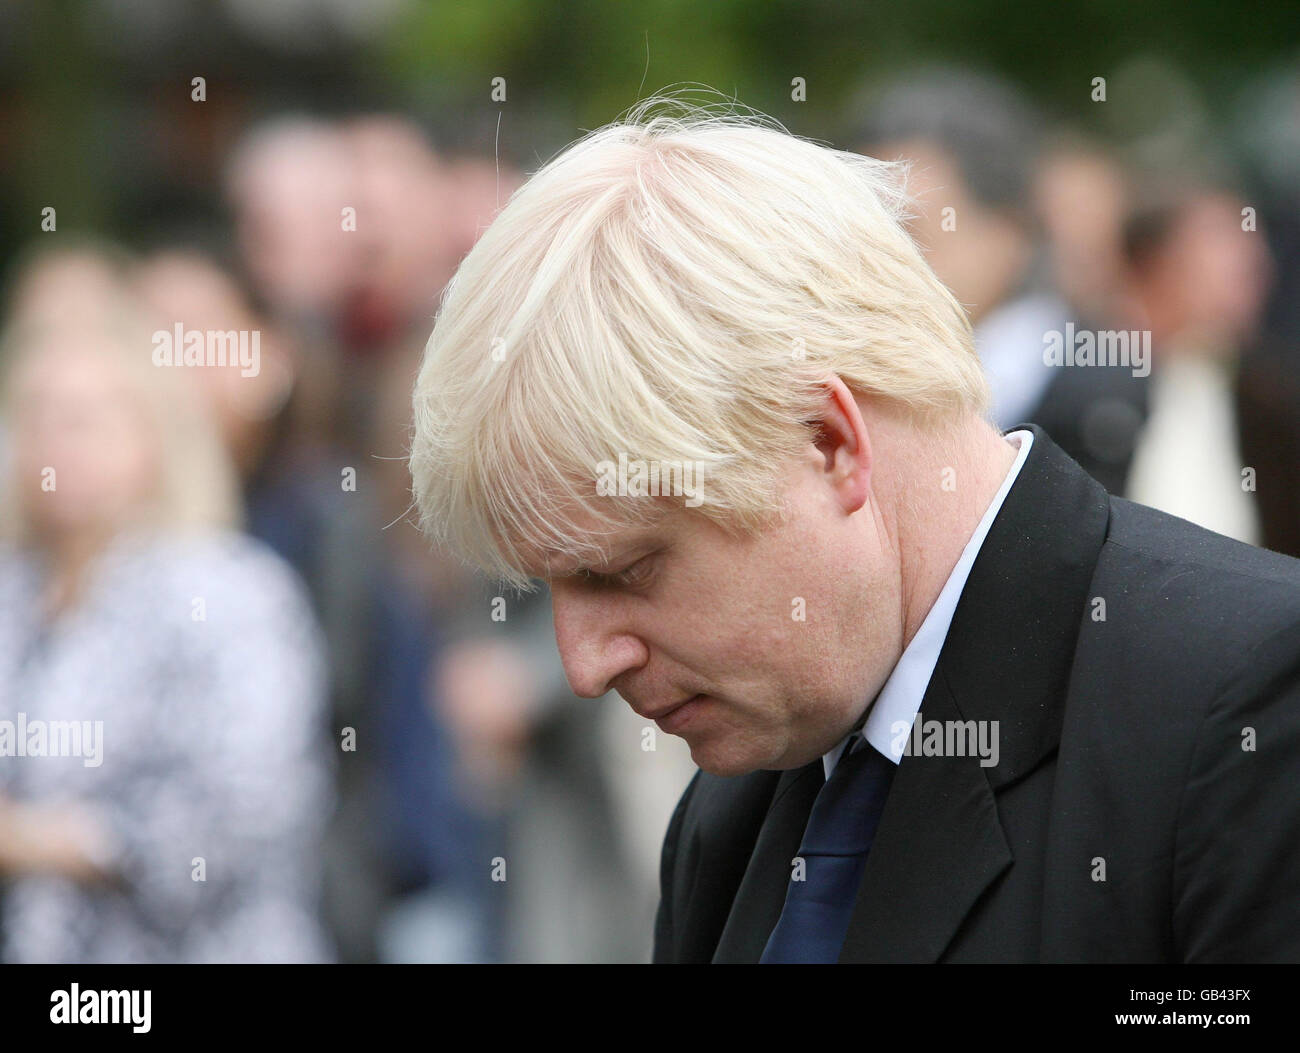 Il sindaco di Londra Boris Johnson partecipa a un concerto commemorativo per celebrare i tragici eventi del 11 settembre sette anni fa, a Grosvenor Square, nel centro di Londra. Foto Stock